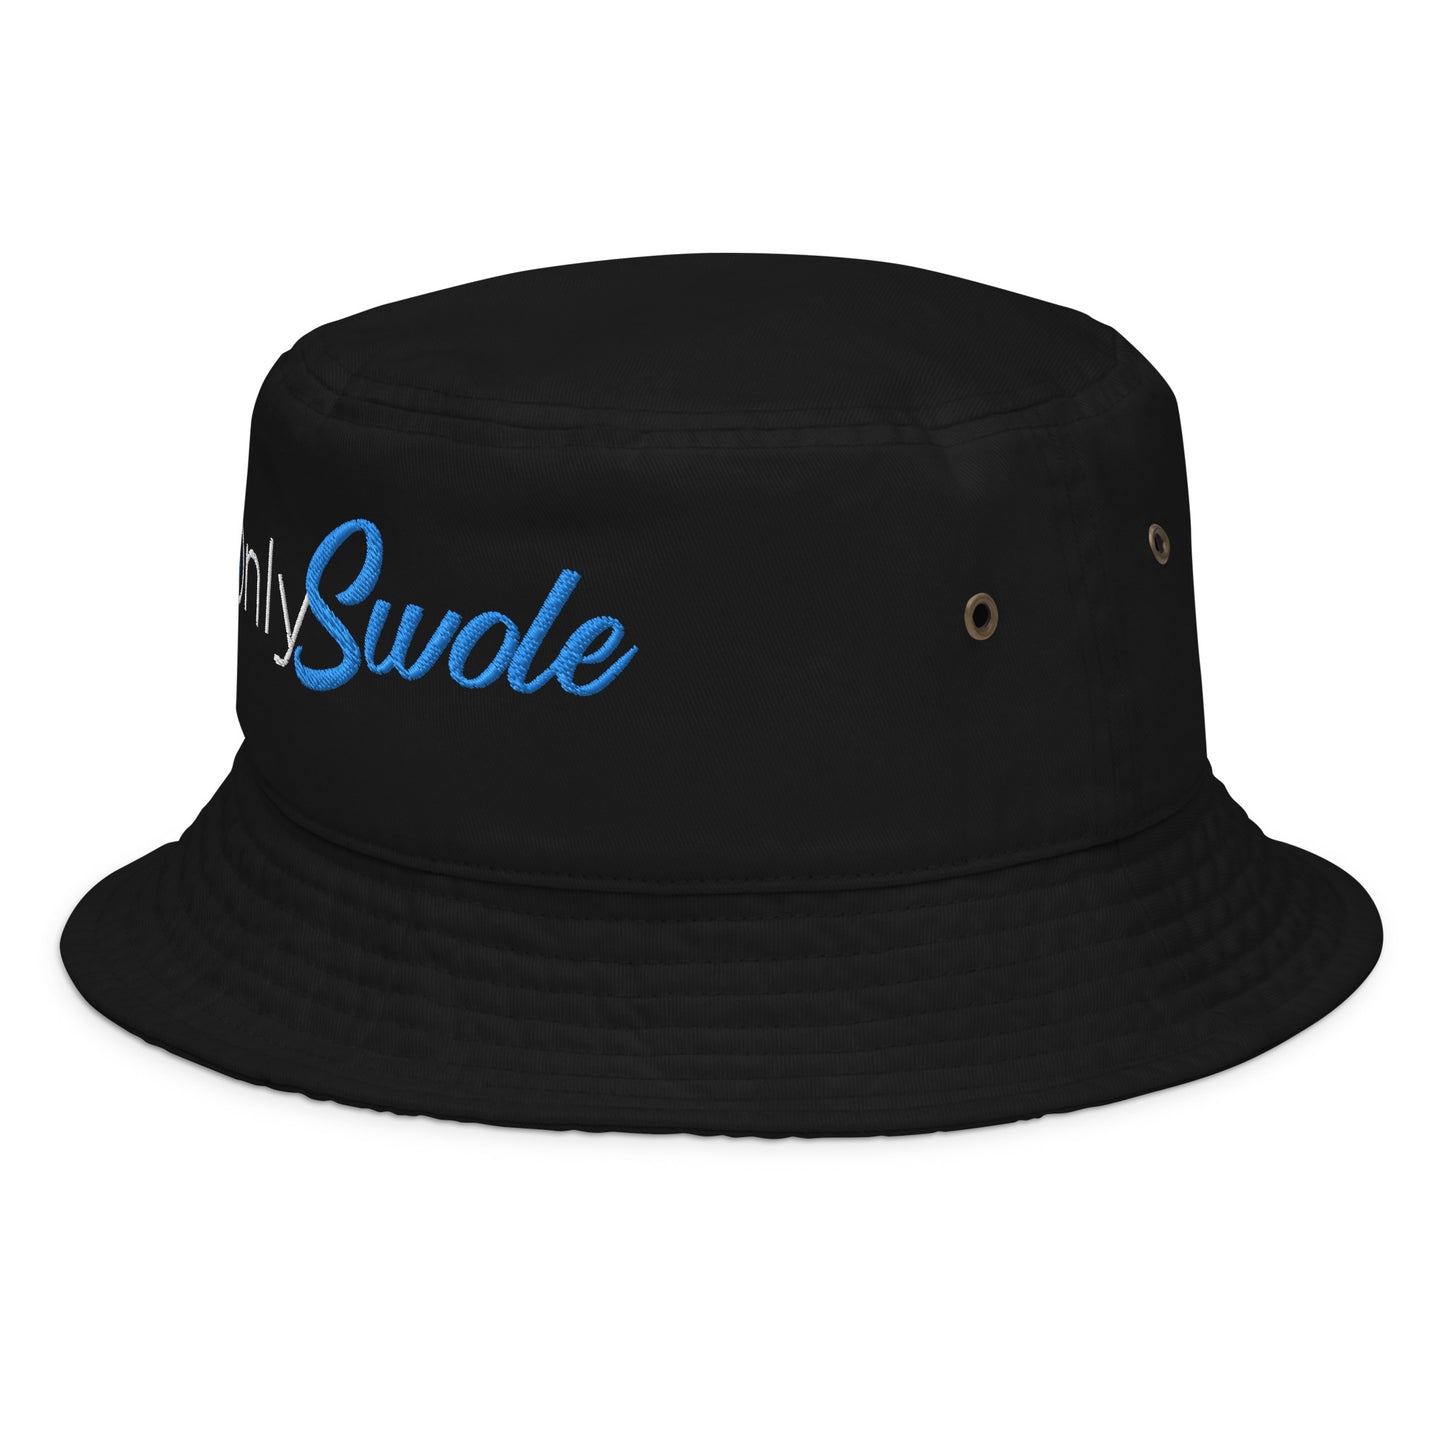 Only Swole Bucket Hat